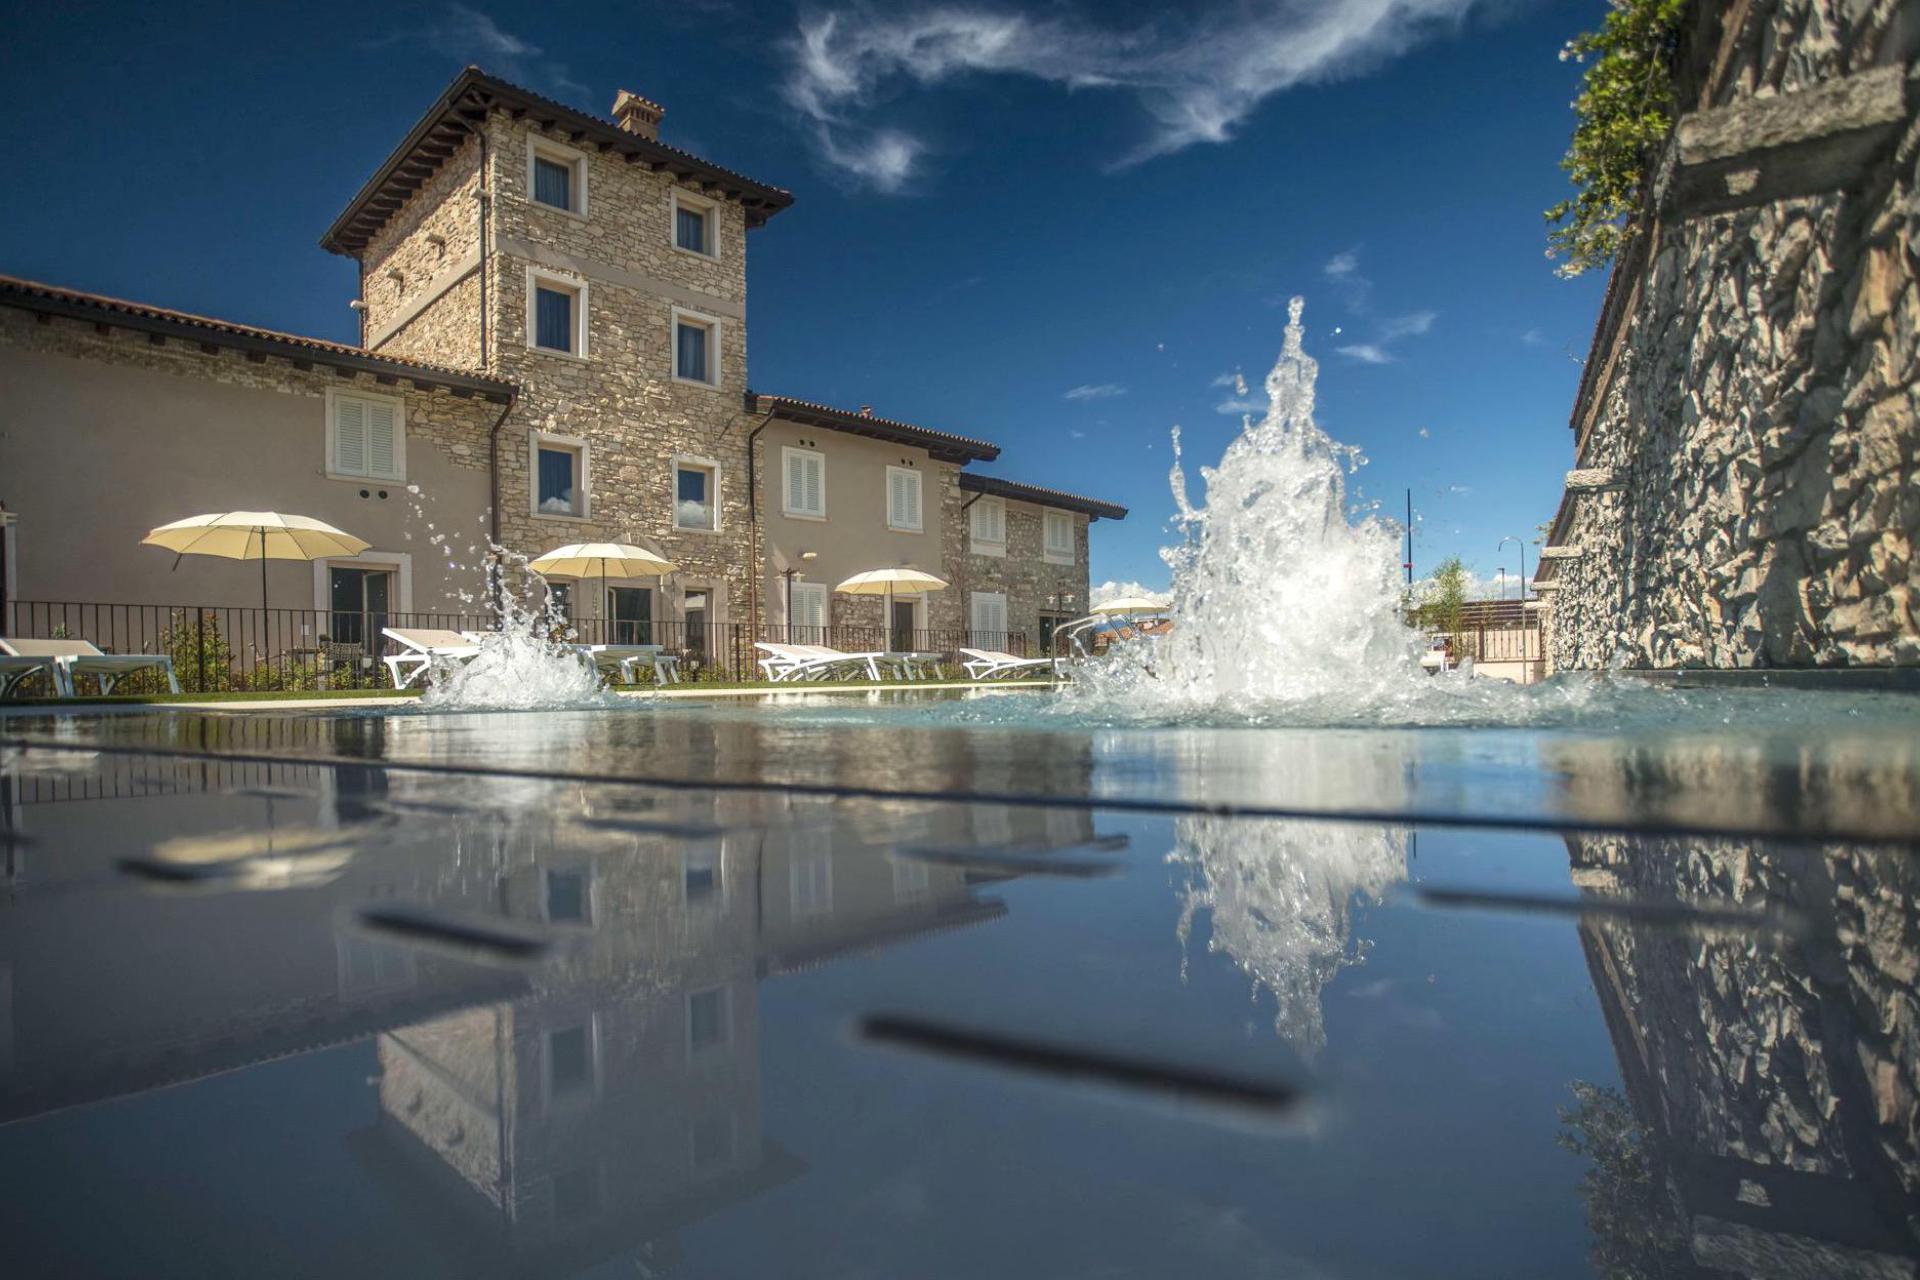 1. Luxury agriturismo within walking distance of Lake Garda